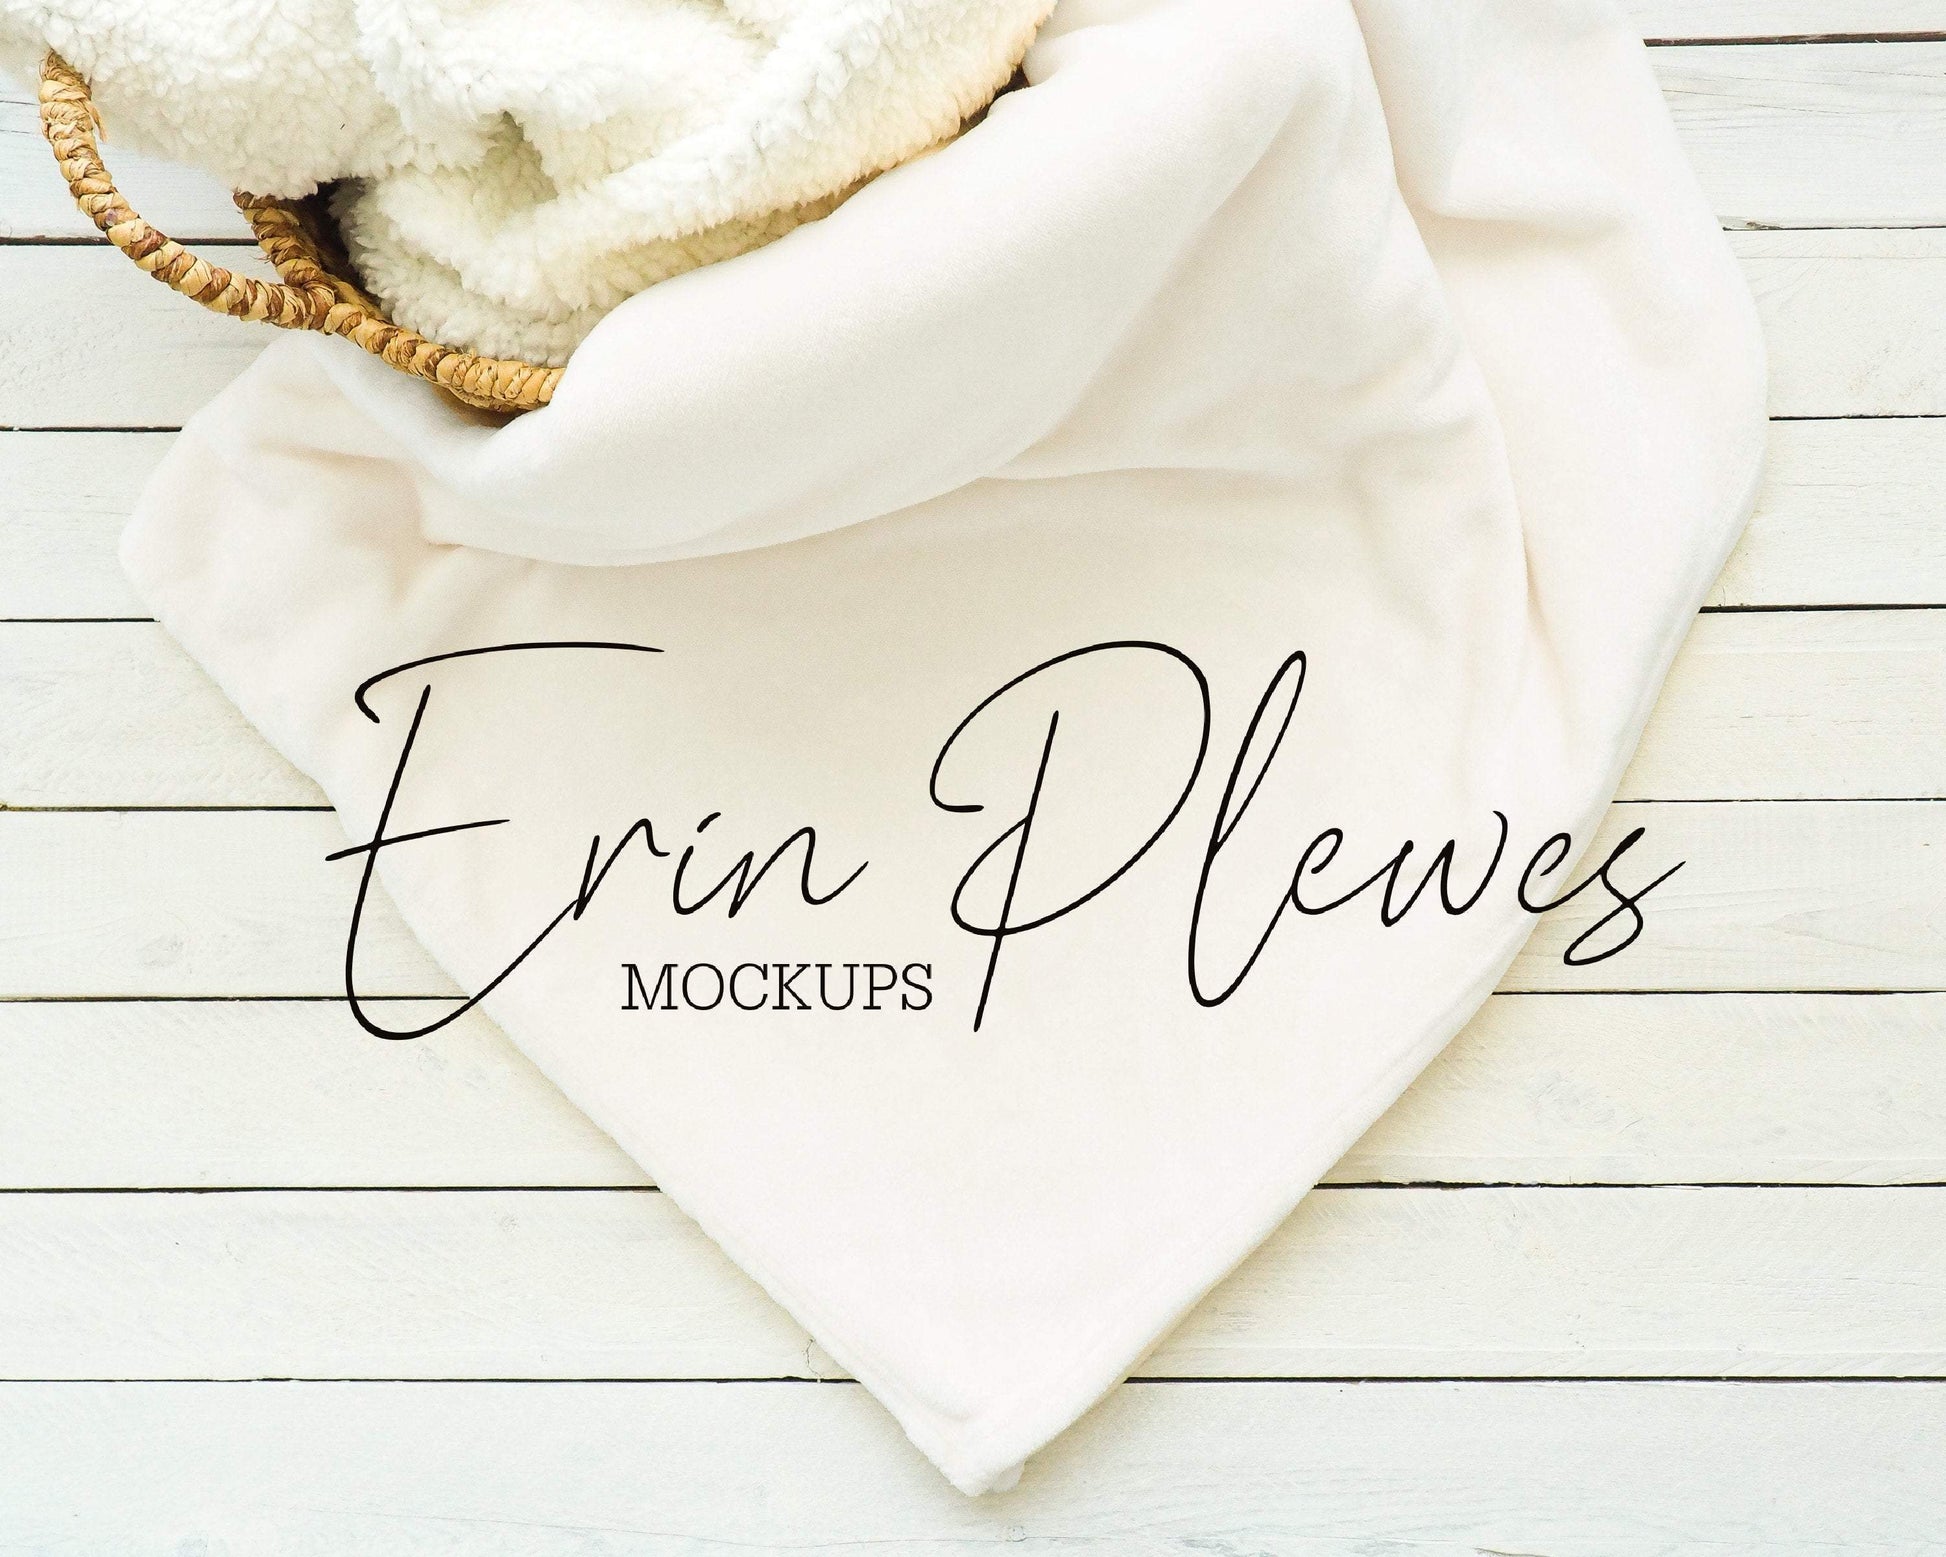 Erin Plewes Mockups Blanket Mockup, White Minky Blanket Mockup in a Basket for Lifestyle Stock Photo, Fleece Blanket Mock Up, Instant Download Jpeg